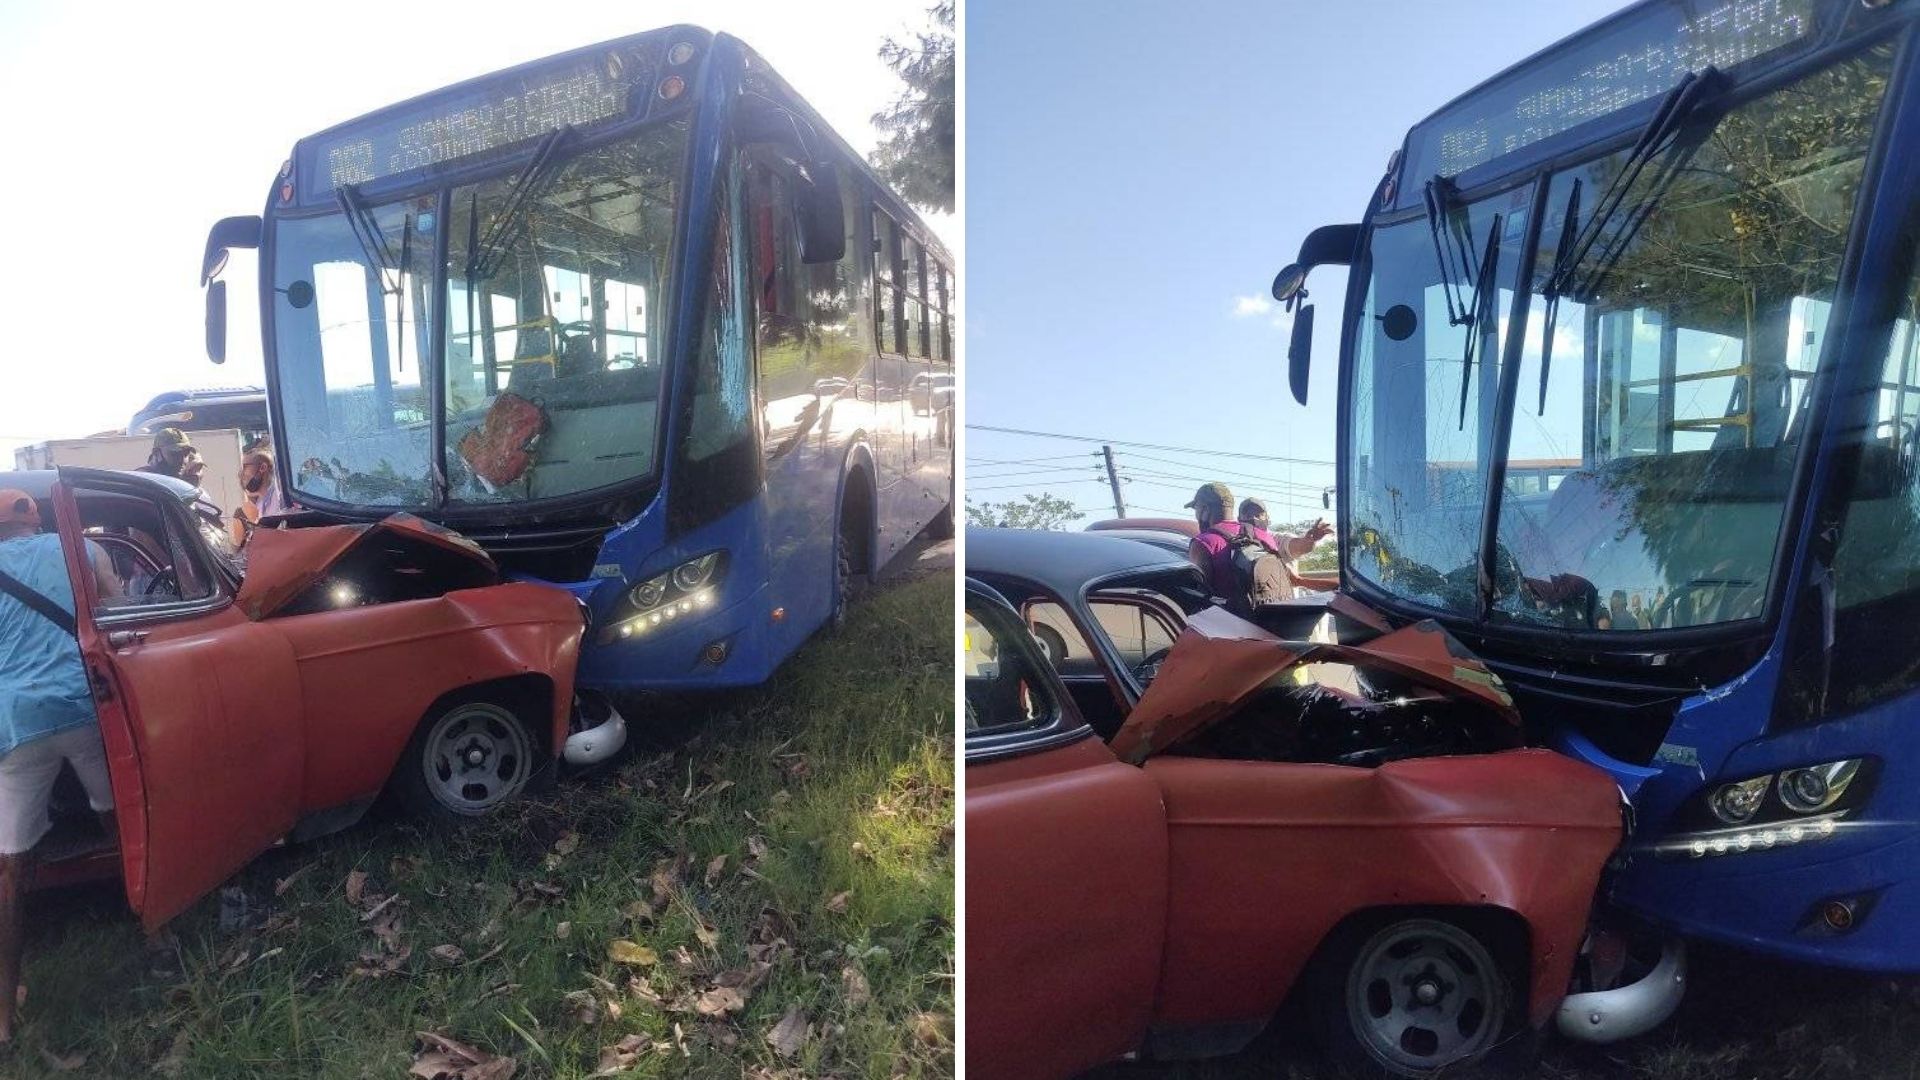 Según publicó el internauta Reynolds Quintana en el grupo de Facebook Accidentes de Buses y Camiones, al parecer al autobús se le fue la dirección e invadió el carril contrario